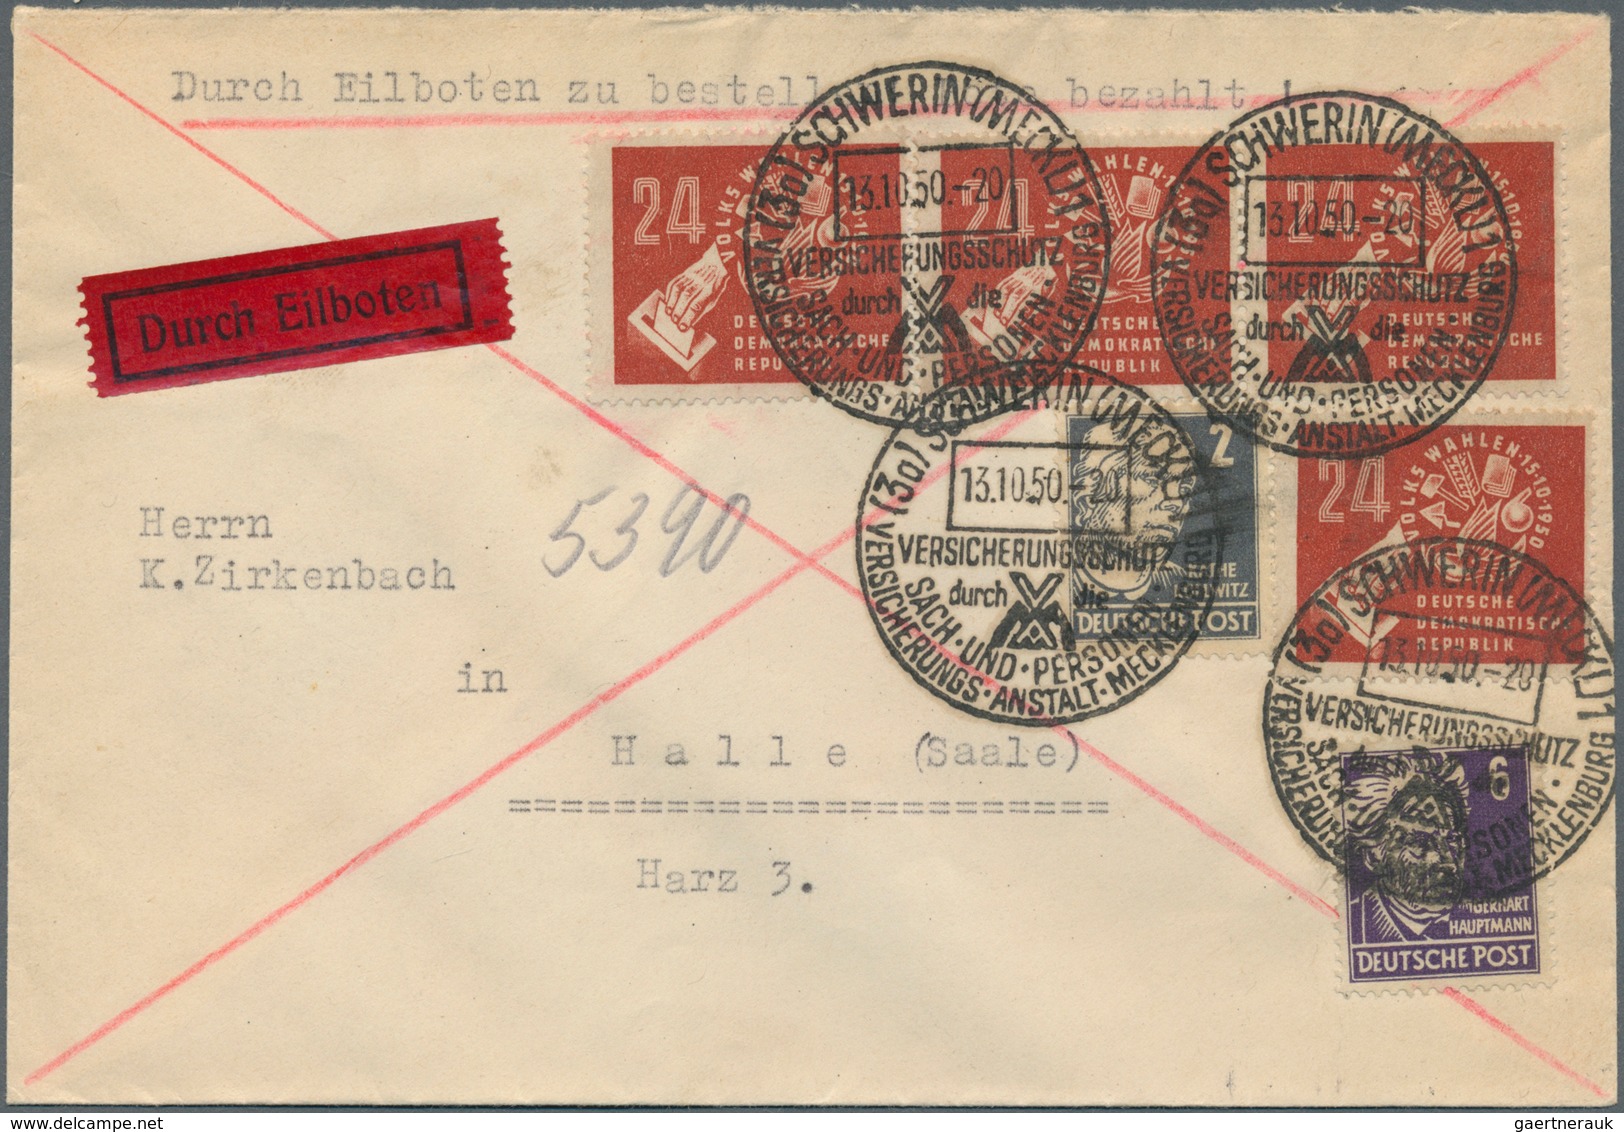 DDR: 1949/1958, gehaltvolle Sammlung der frühen DDR-Ausgaben als Frankatur auf insgesamt 262 Belegen